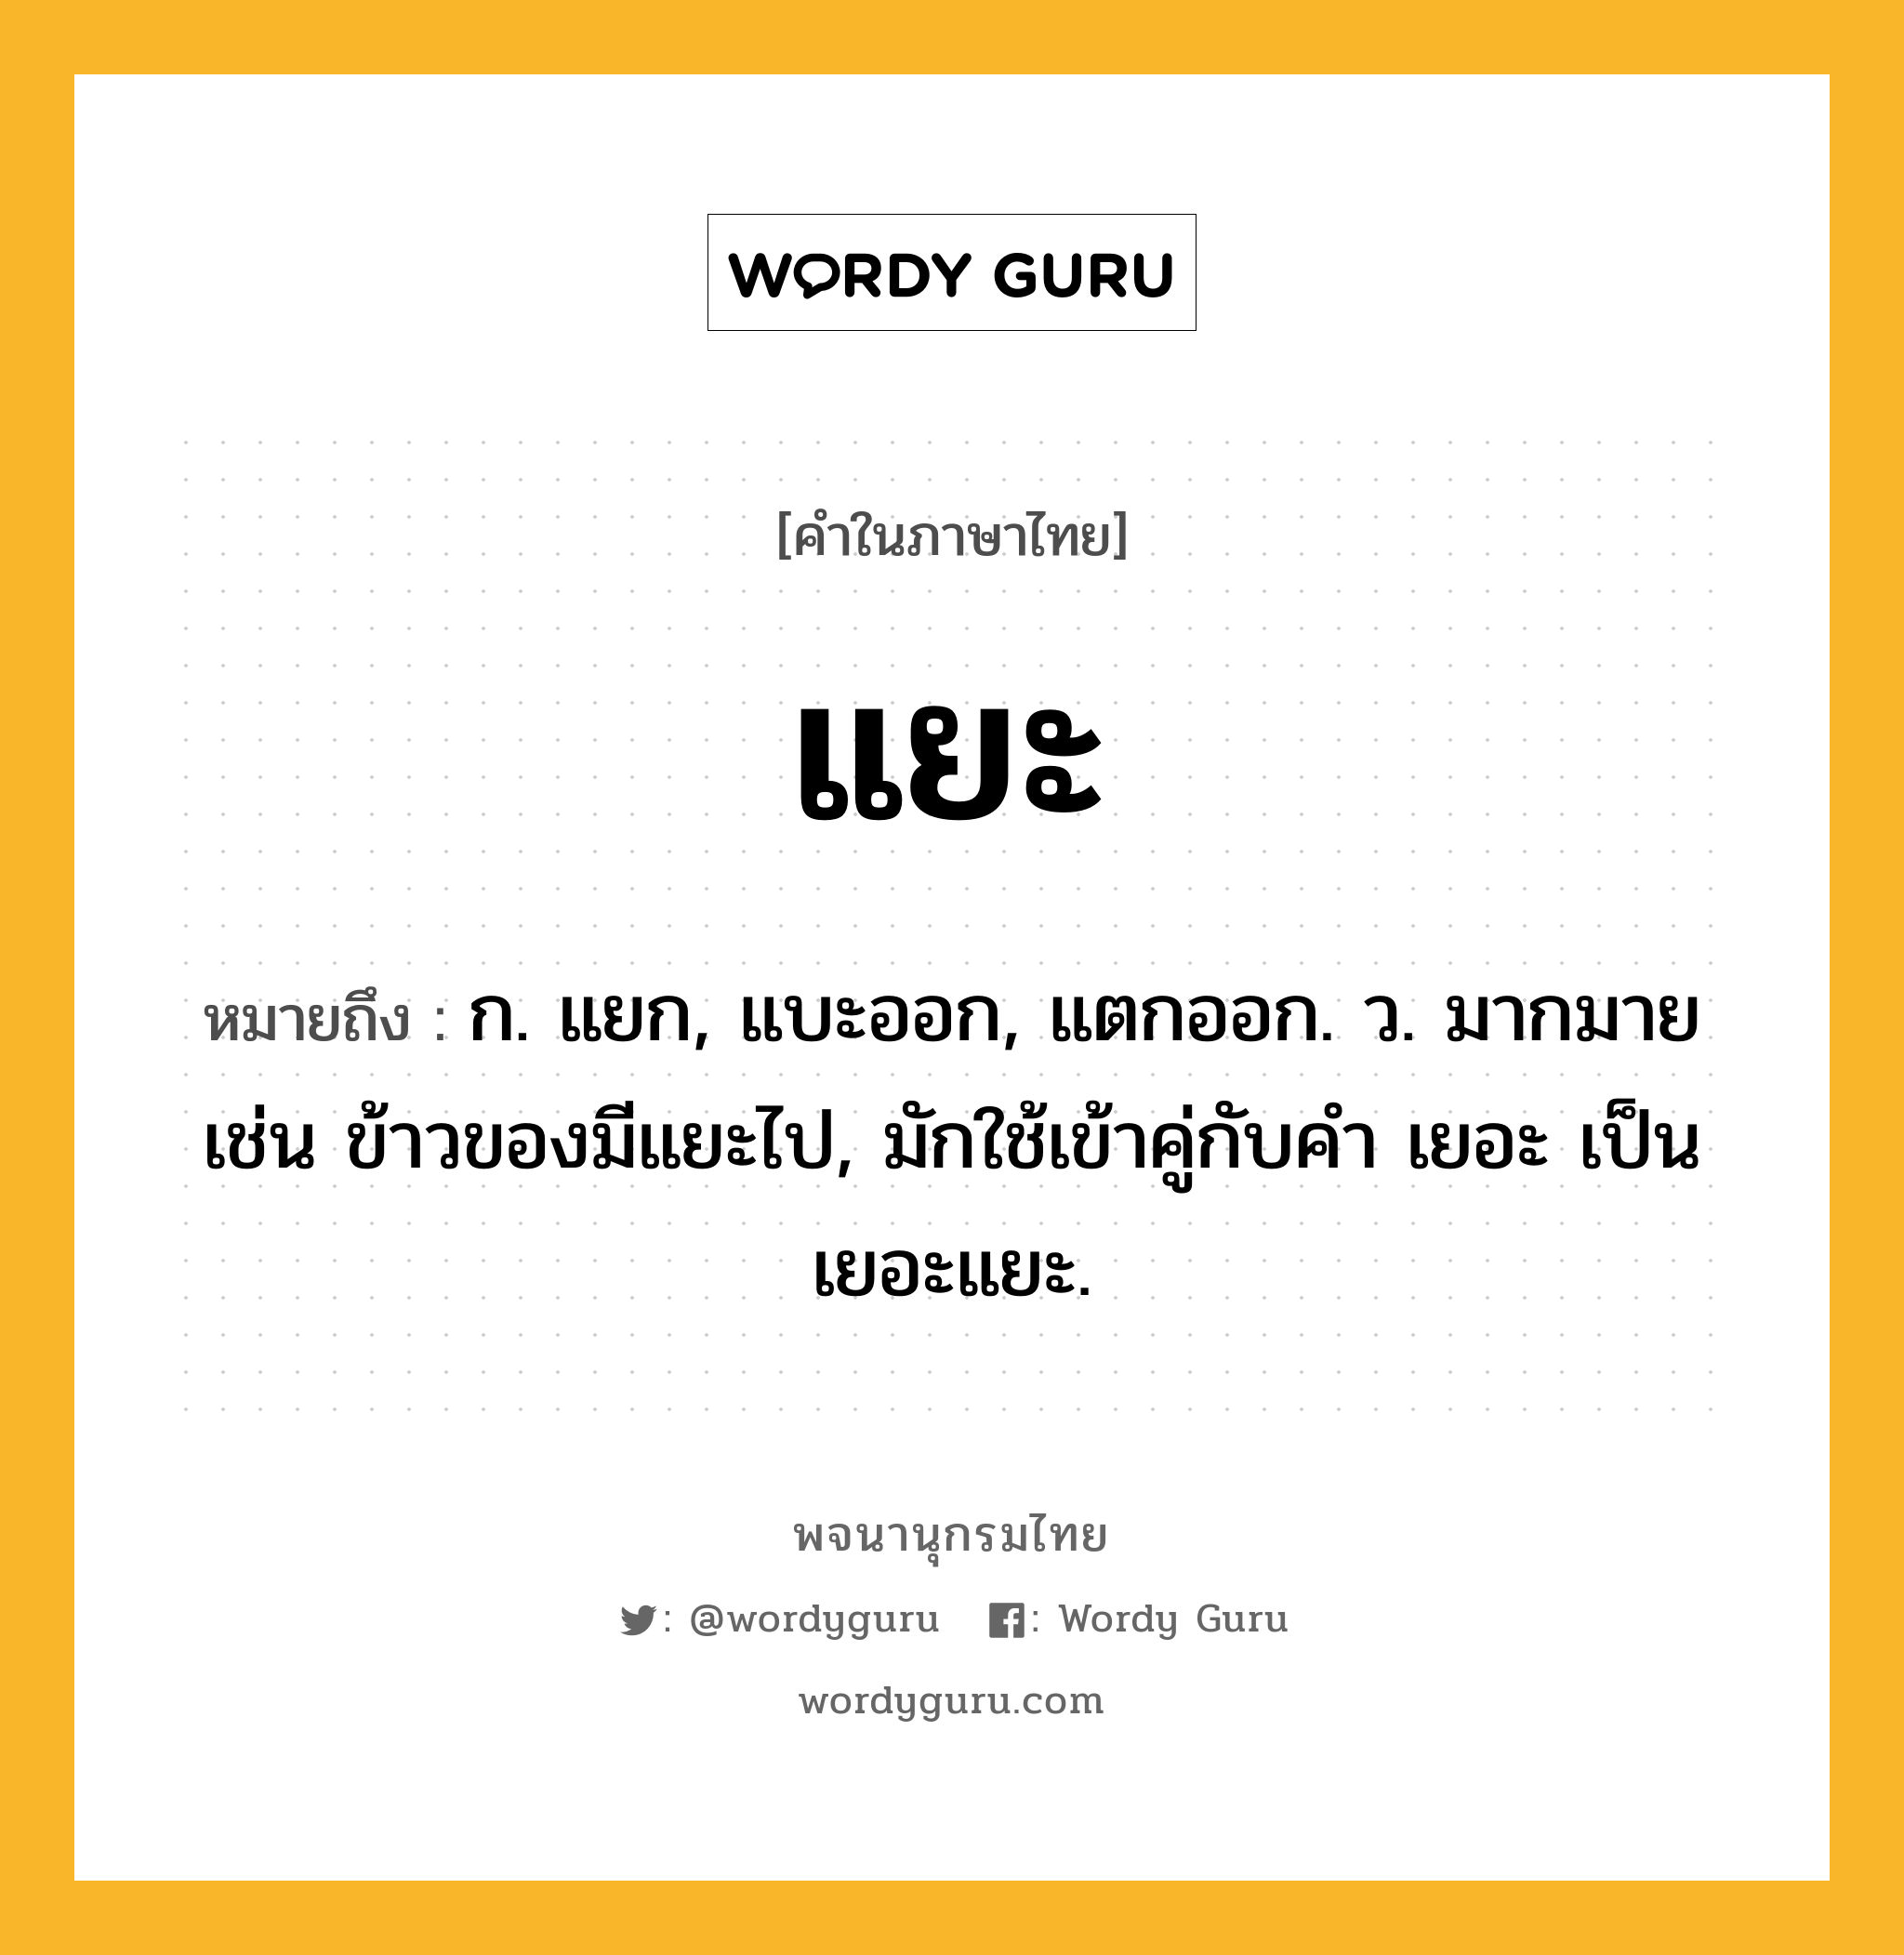 แยะ ความหมาย หมายถึงอะไร?, คำในภาษาไทย แยะ หมายถึง ก. แยก, แบะออก, แตกออก. ว. มากมาย เช่น ข้าวของมีแยะไป, มักใช้เข้าคู่กับคำ เยอะ เป็น เยอะแยะ.